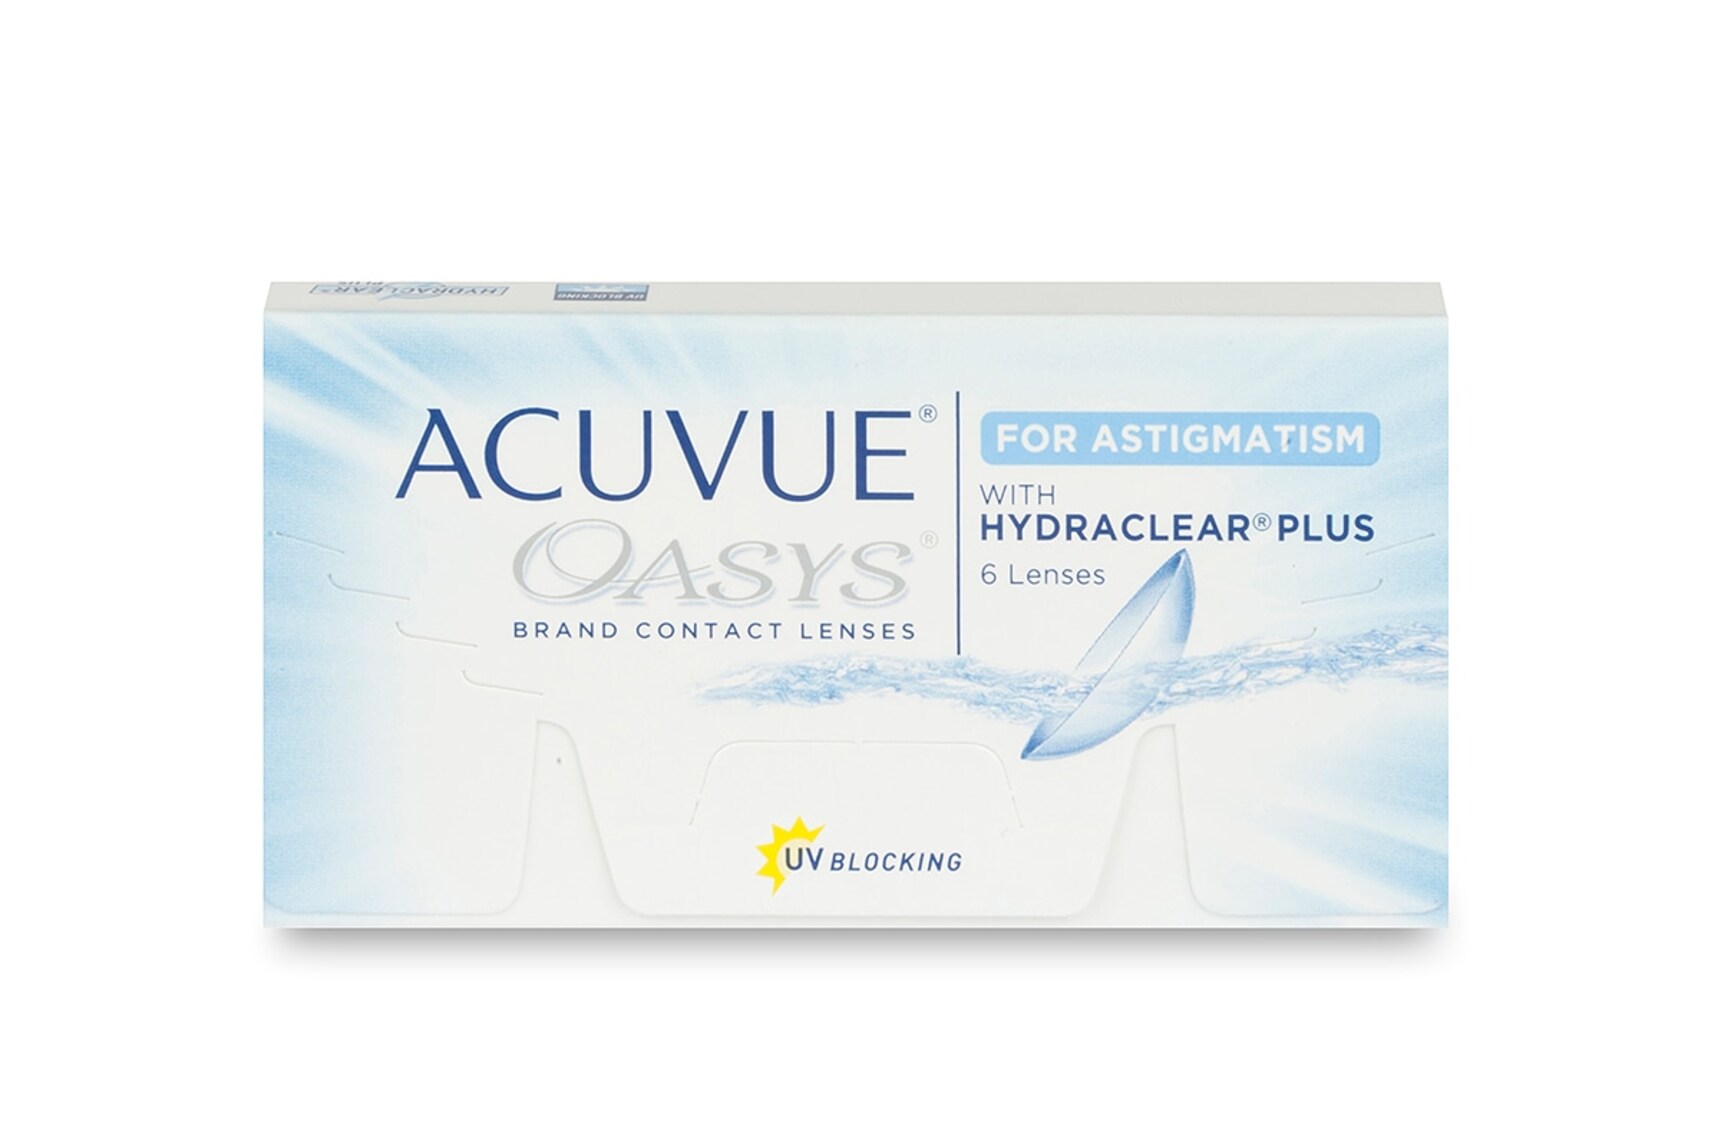 acuvue-oasys-for-astigmatism-garantiert-g-nstig-bei-fielmann